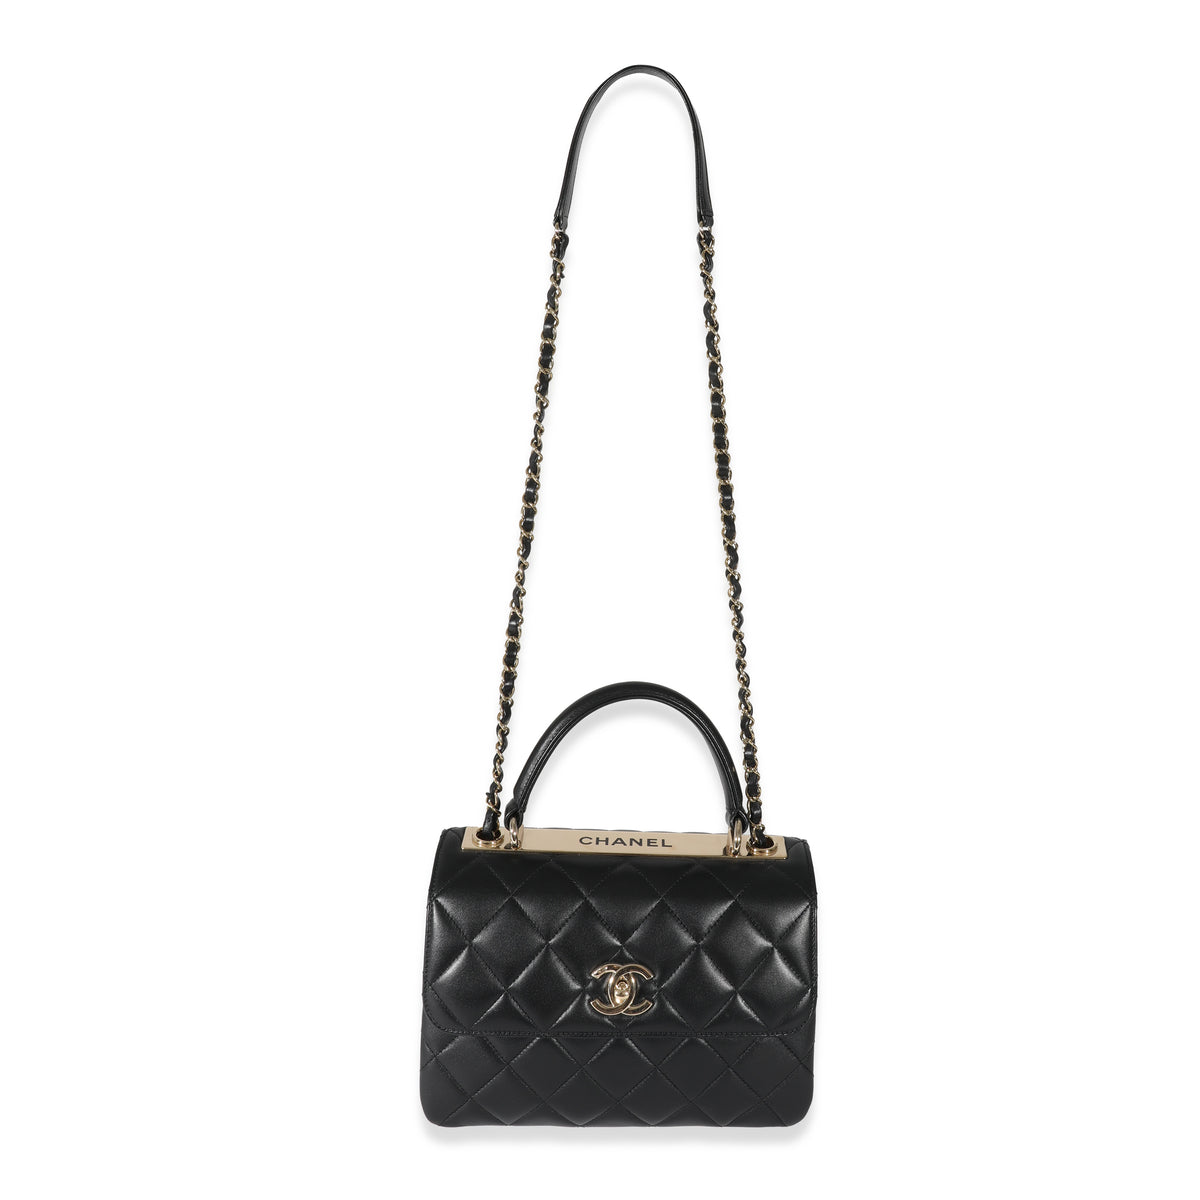 Chanel Black Lambskin Small Trendy Flap Bag, myGemma, GB